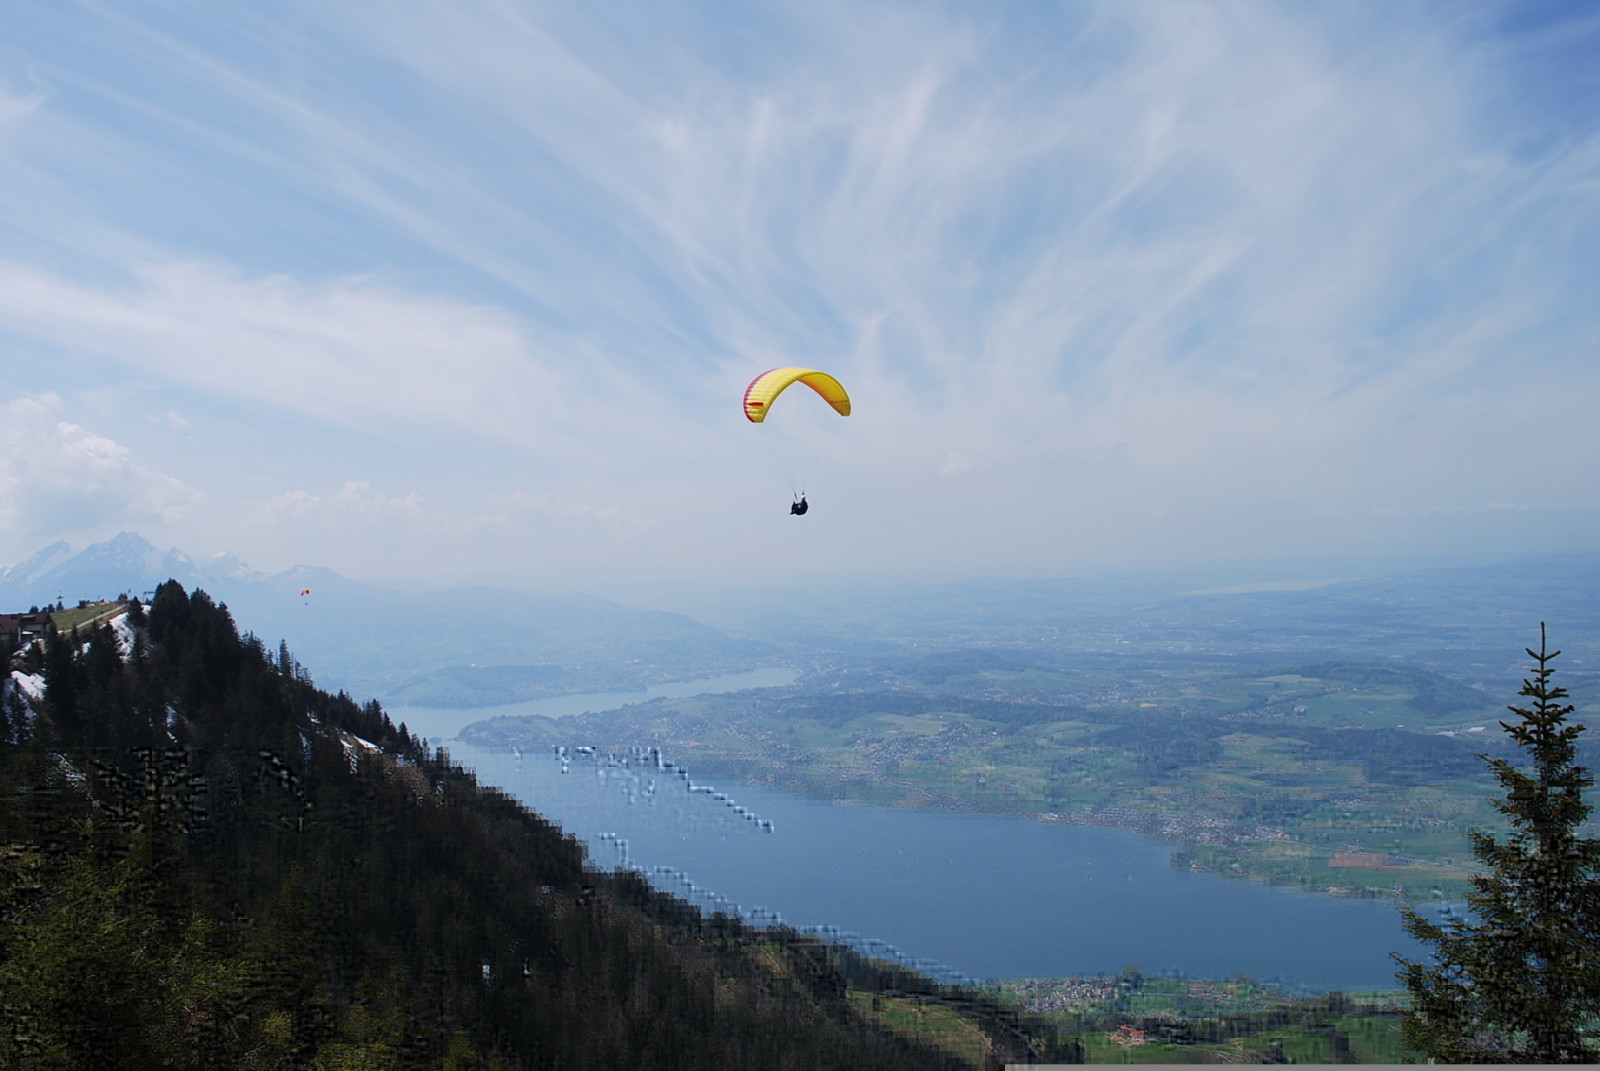 แม่น้ำ, ประเทศสวิสเซอร์แลนด์, ภูเขา, ทัศนียภาพ, paraglider, ที่ราบ